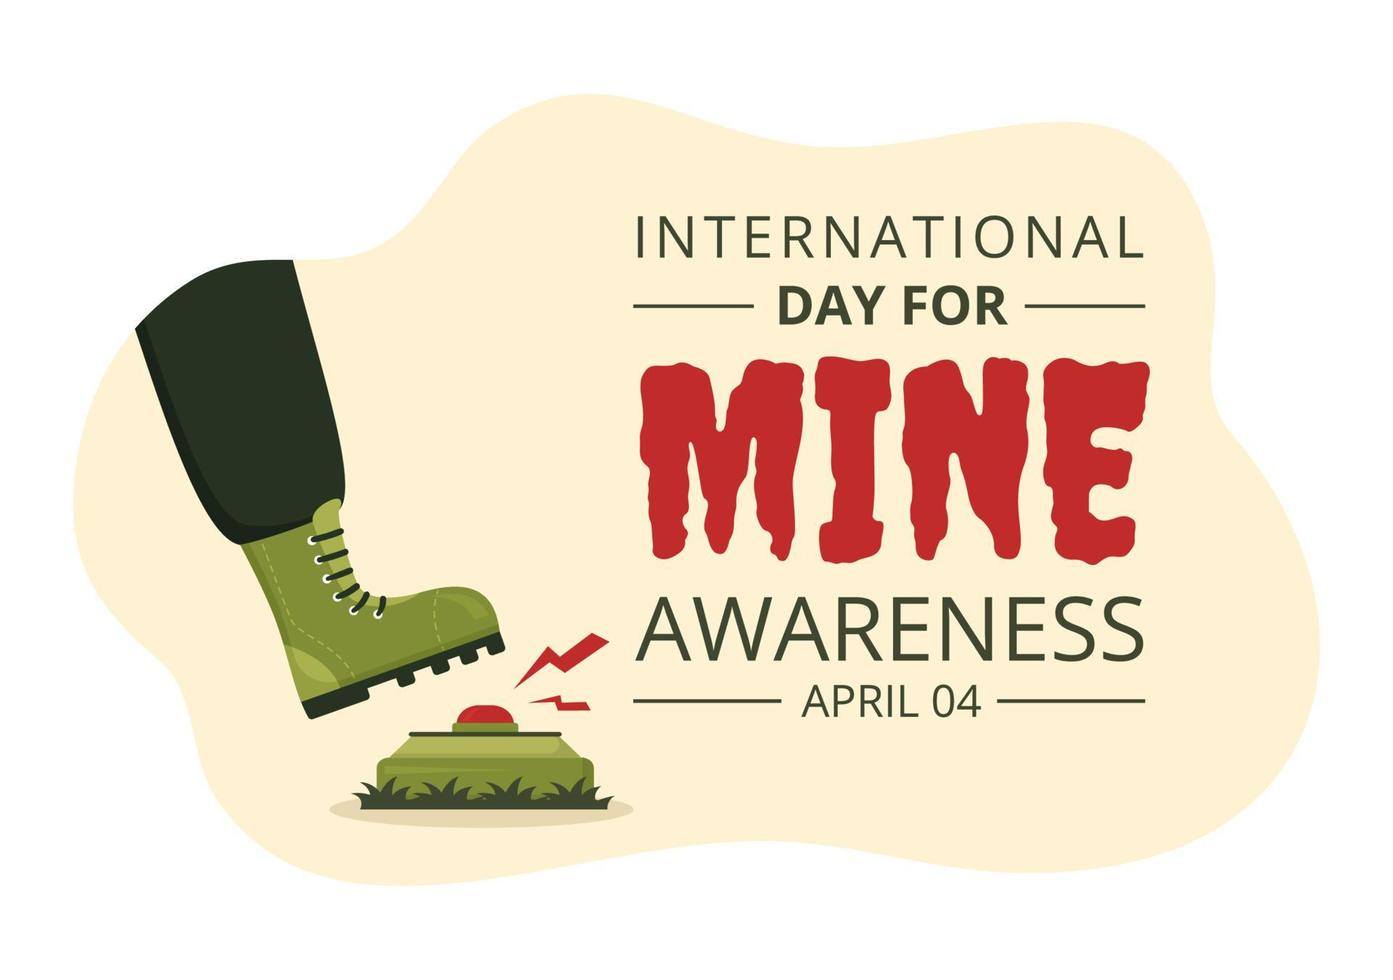 día internacional de concientización sobre las minas el 04 de abril ilustración con no pisar minas terrestres para banner web en plantillas planas dibujadas a mano de dibujos animados vector